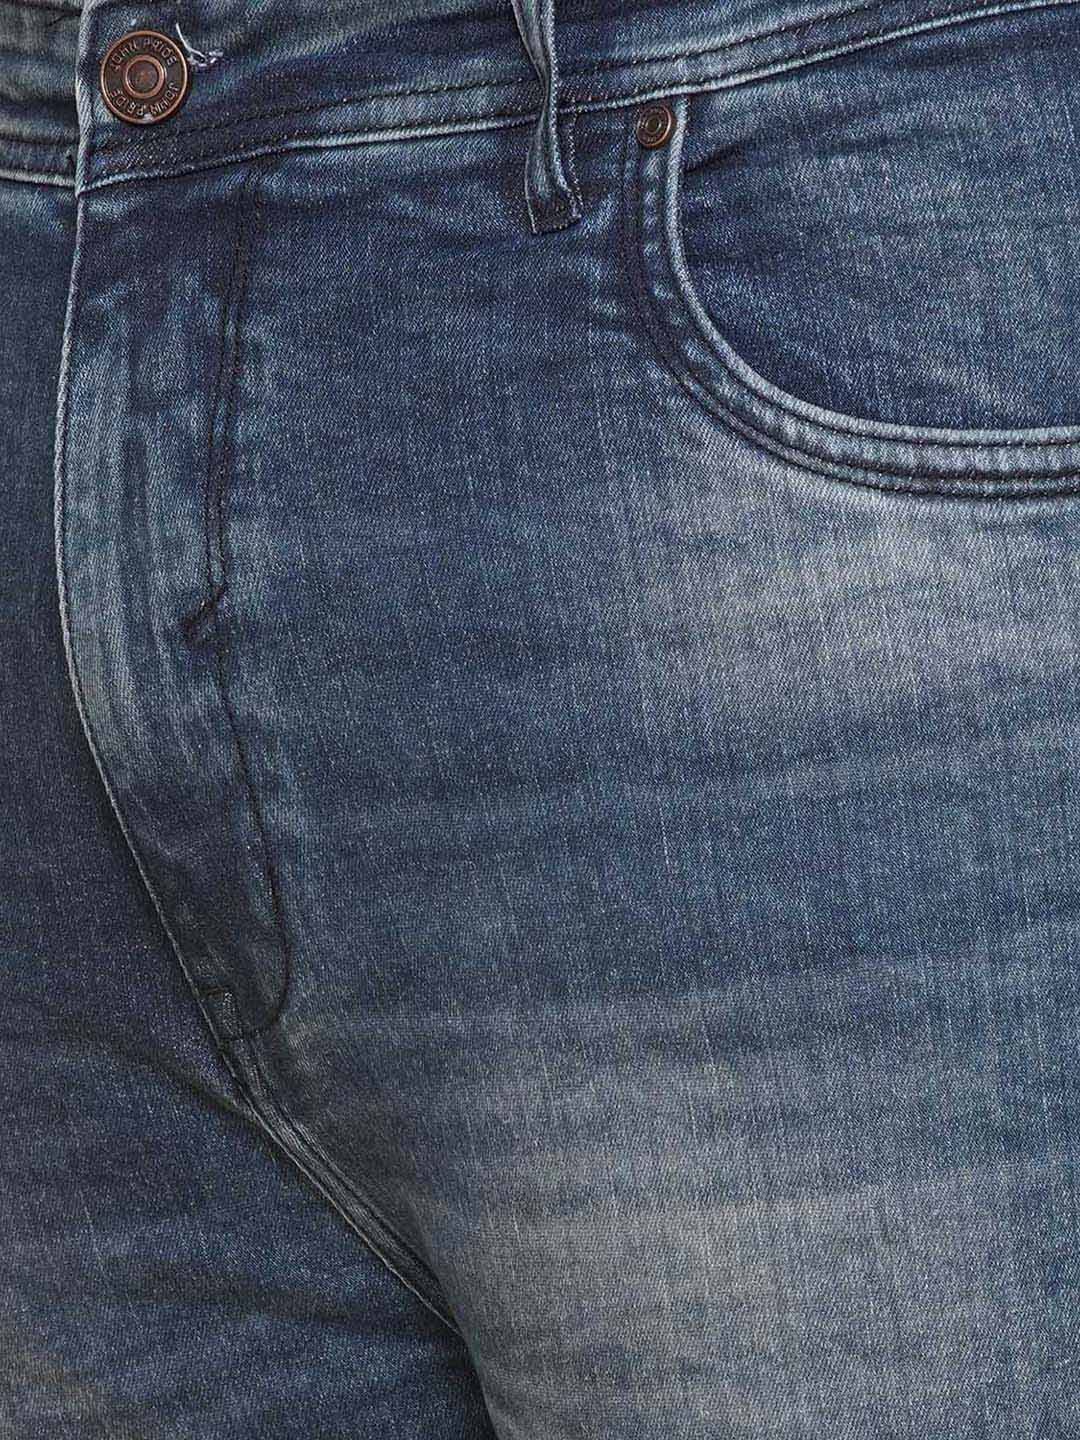 bottomwear/jeans/EJPJ25139/ejpj25139-2.jpg